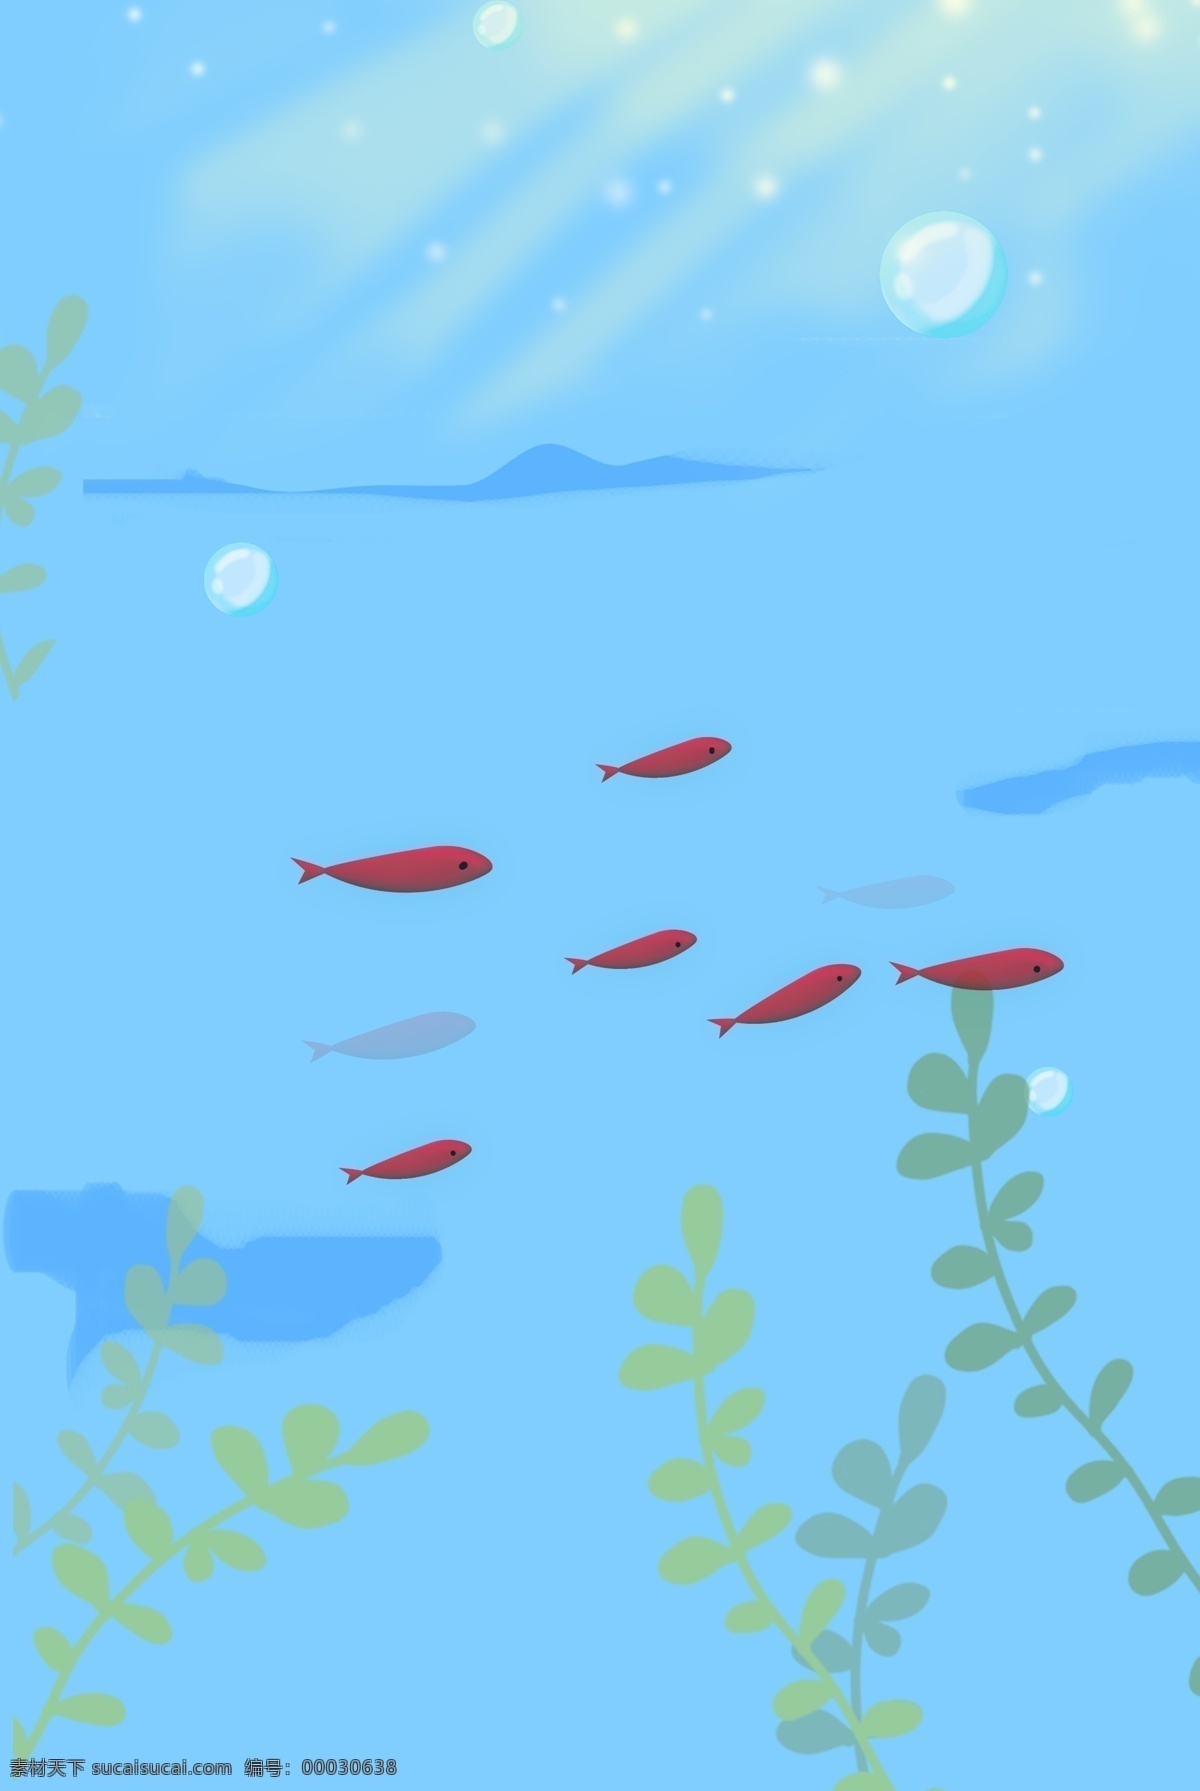 夏日 海底 鱼群 蓝色 背景 海草 光线 气泡 简约 手绘